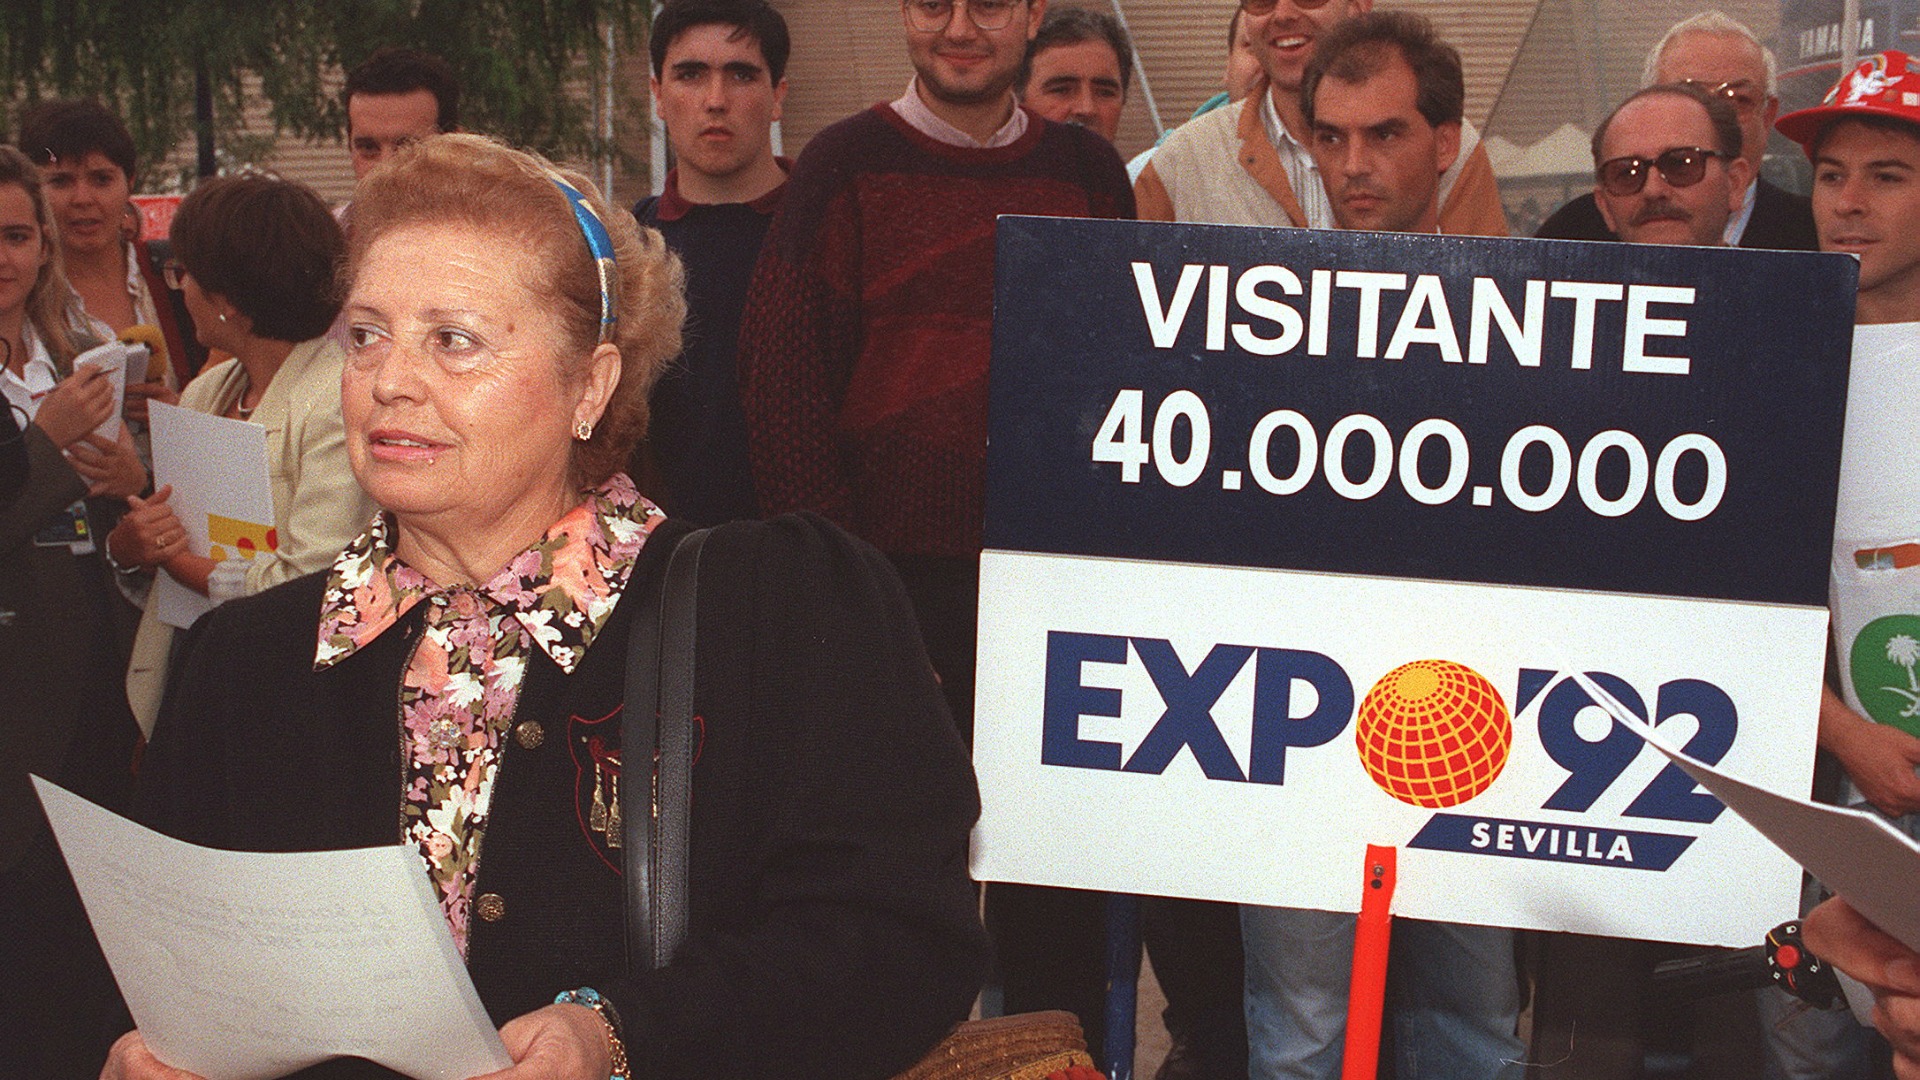 El siglo XXI comenzó en Sevilla con la Expo’92